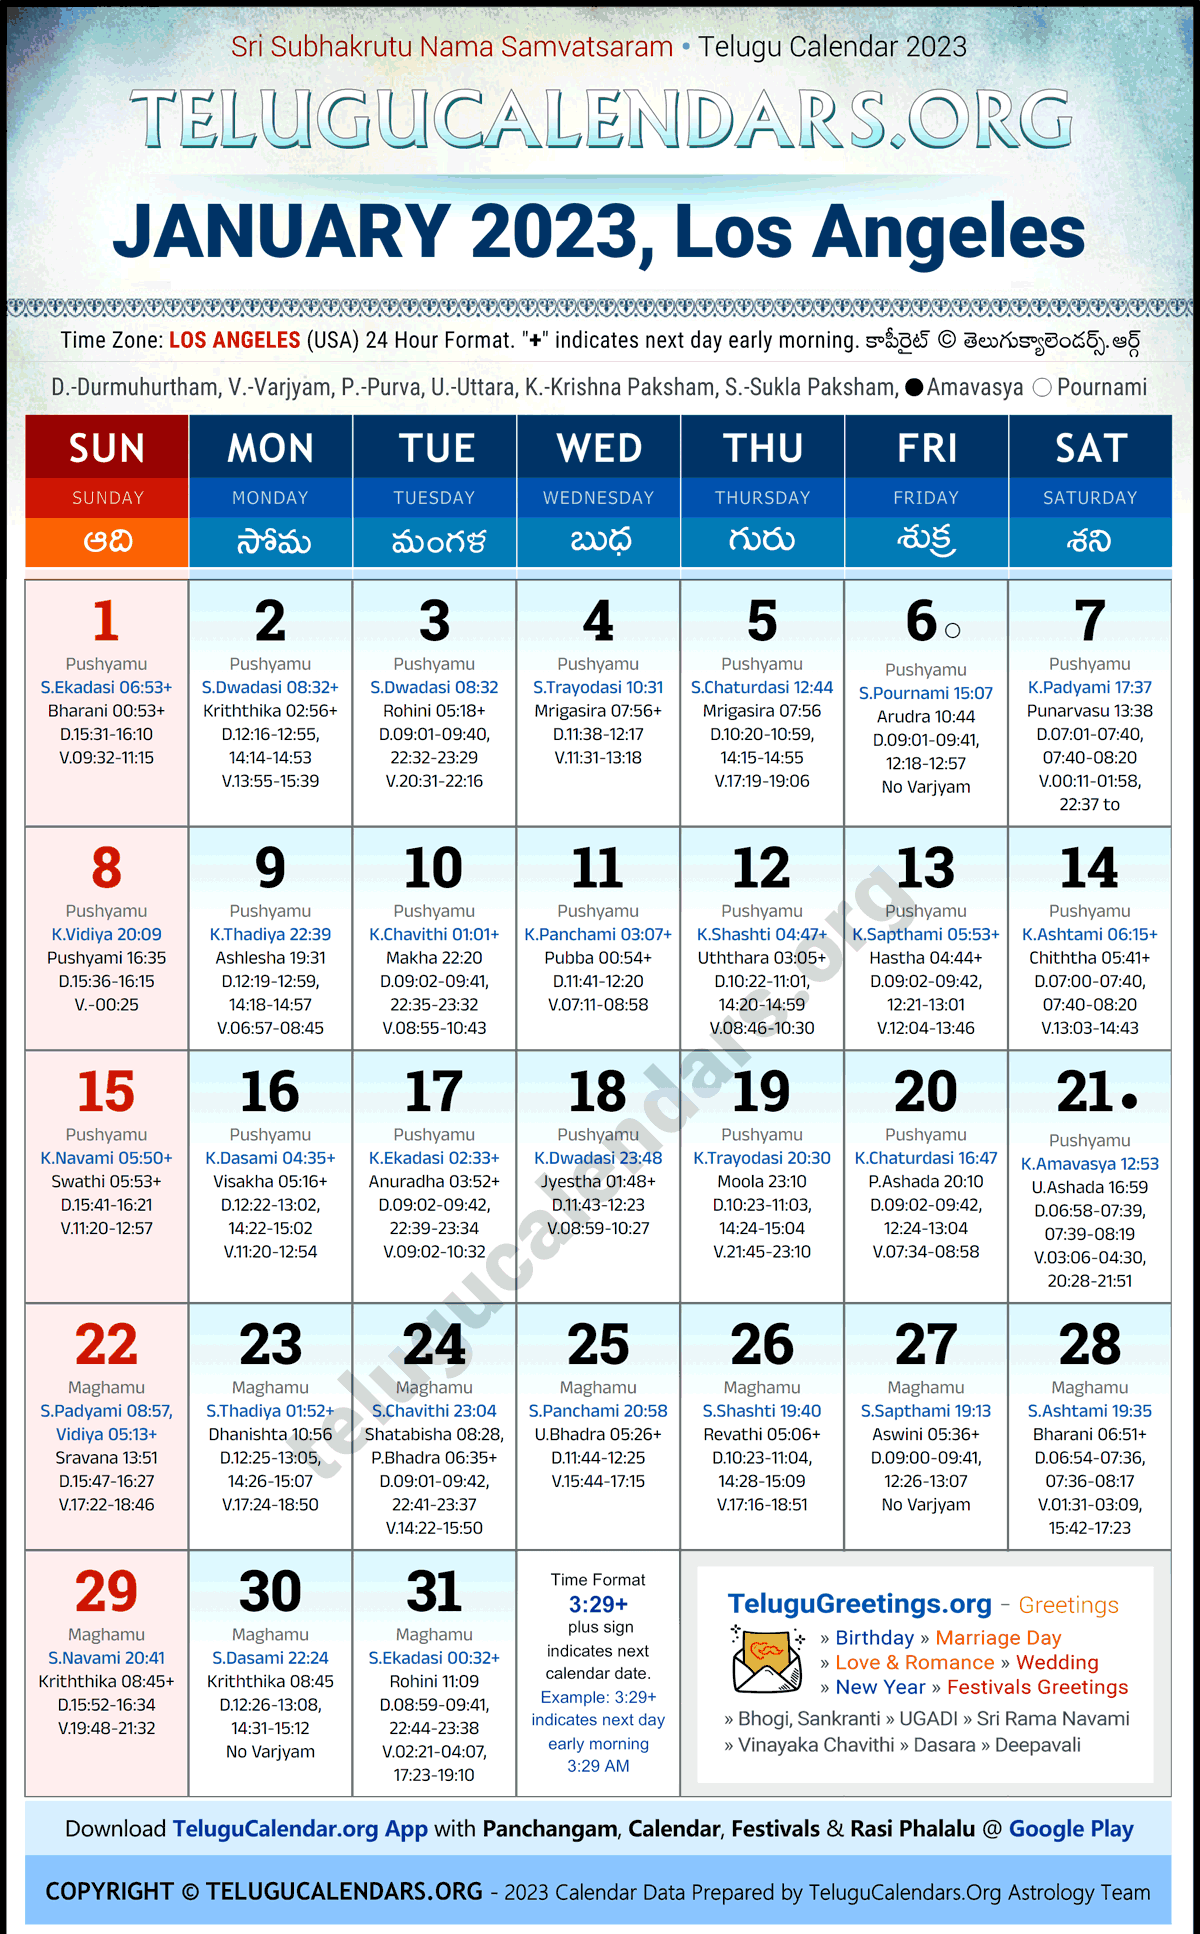 Telugu Calendar 2023 January Festivals for Los Angeles